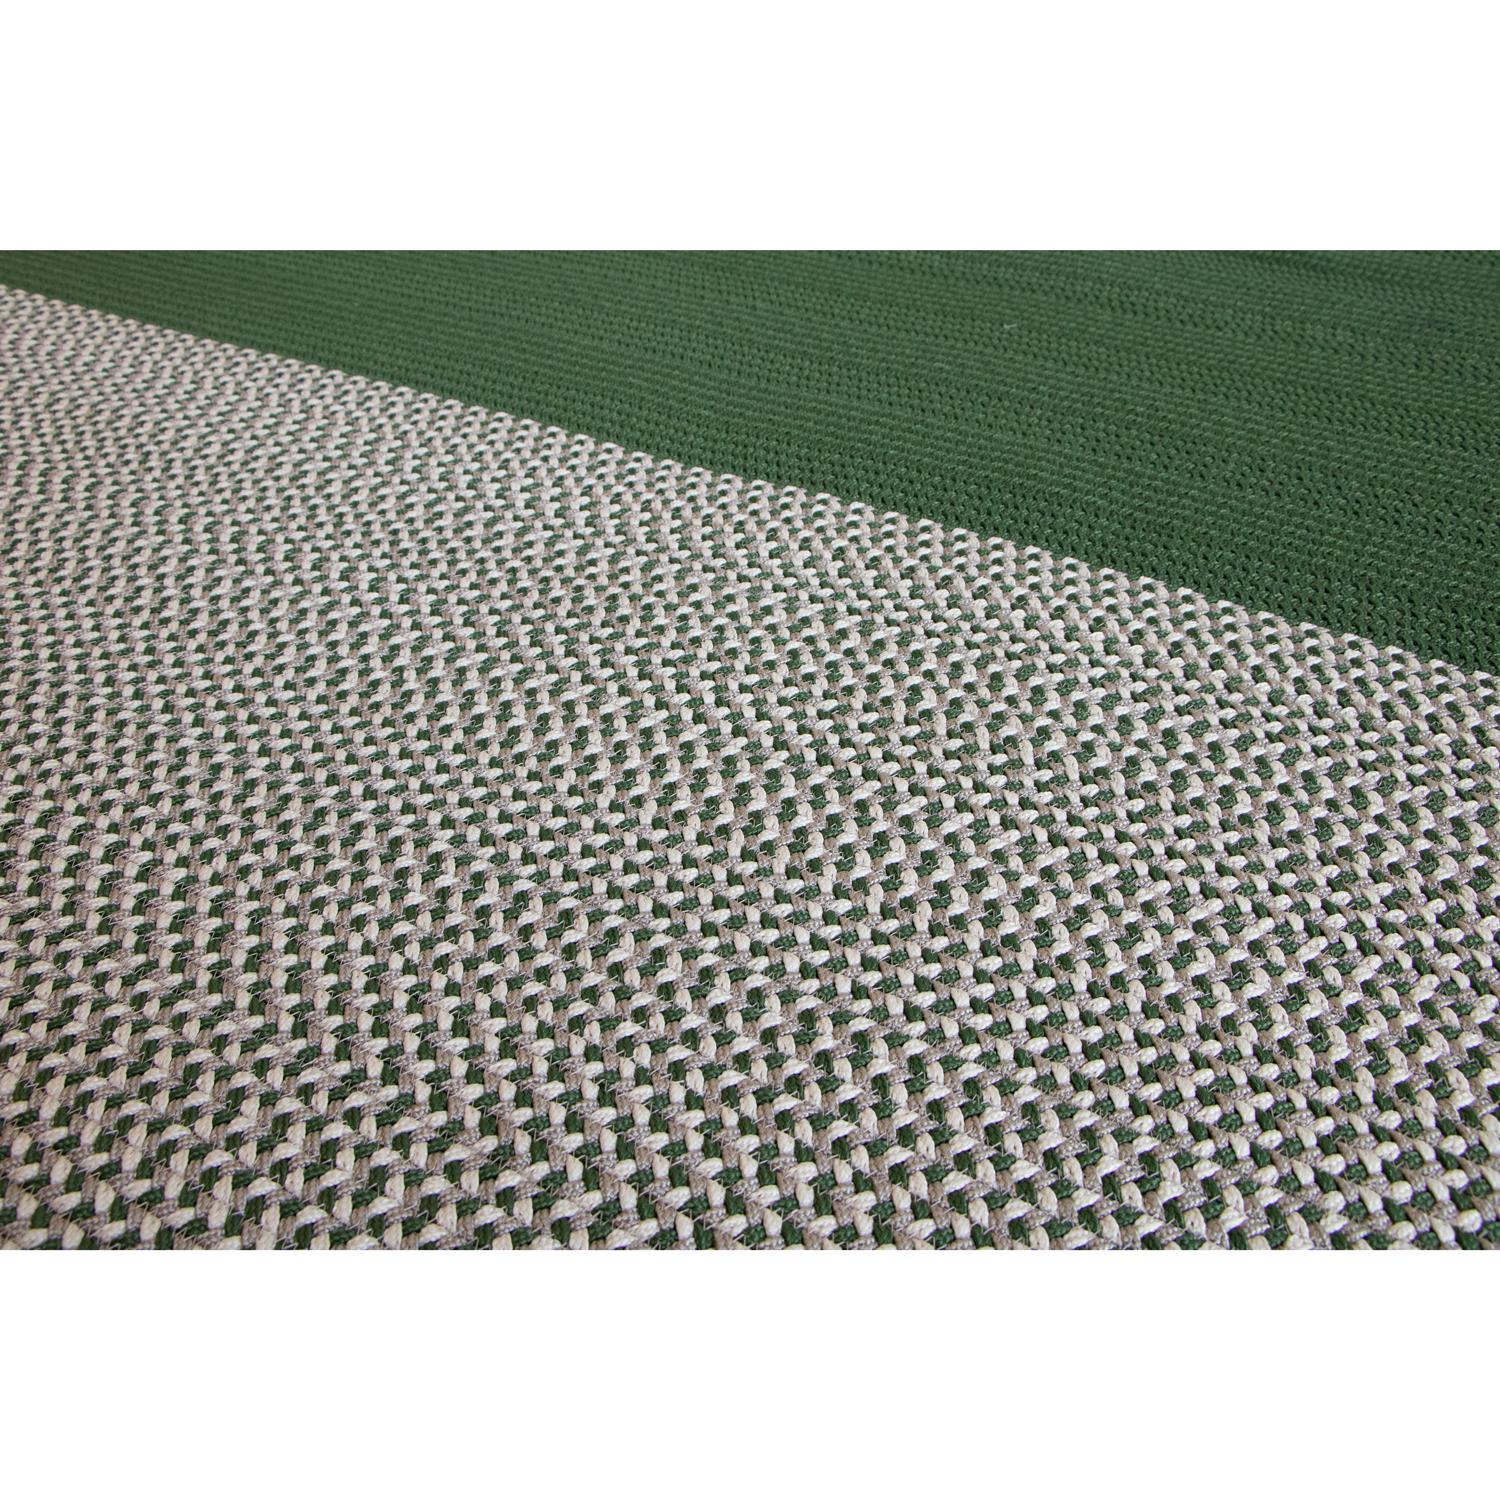 Indian Tappeto foglia outdoor verde grigio design italiano Deanna Comellini 176x300cm For Sale